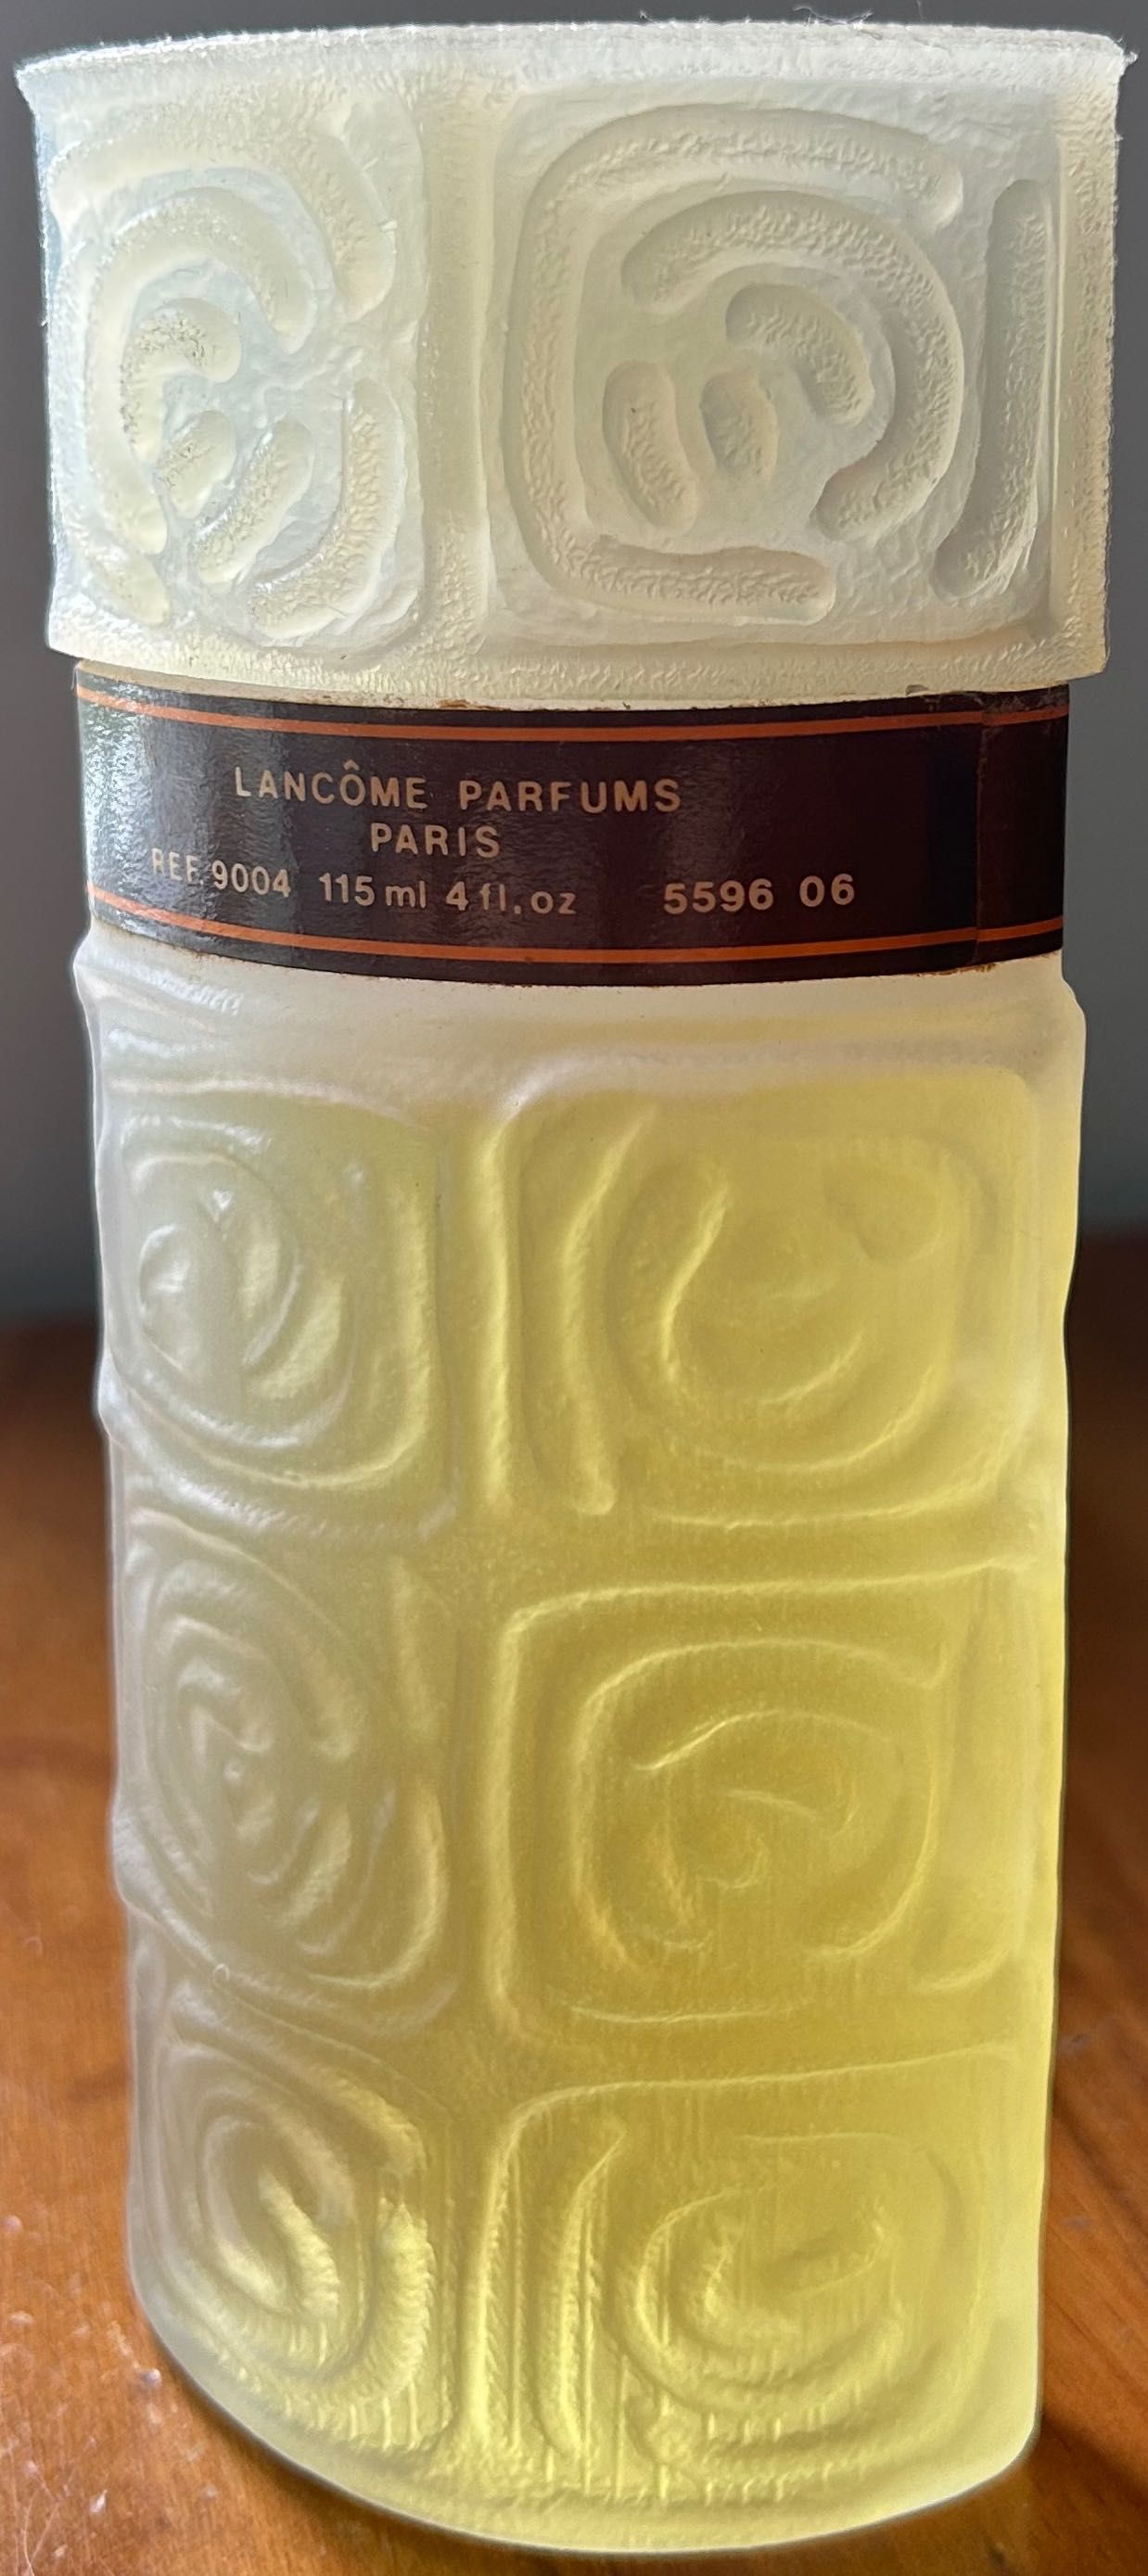 Ô de Lancôme - Eau de Fraîche 85° 115 ml Ref. 9004 (Vintage)